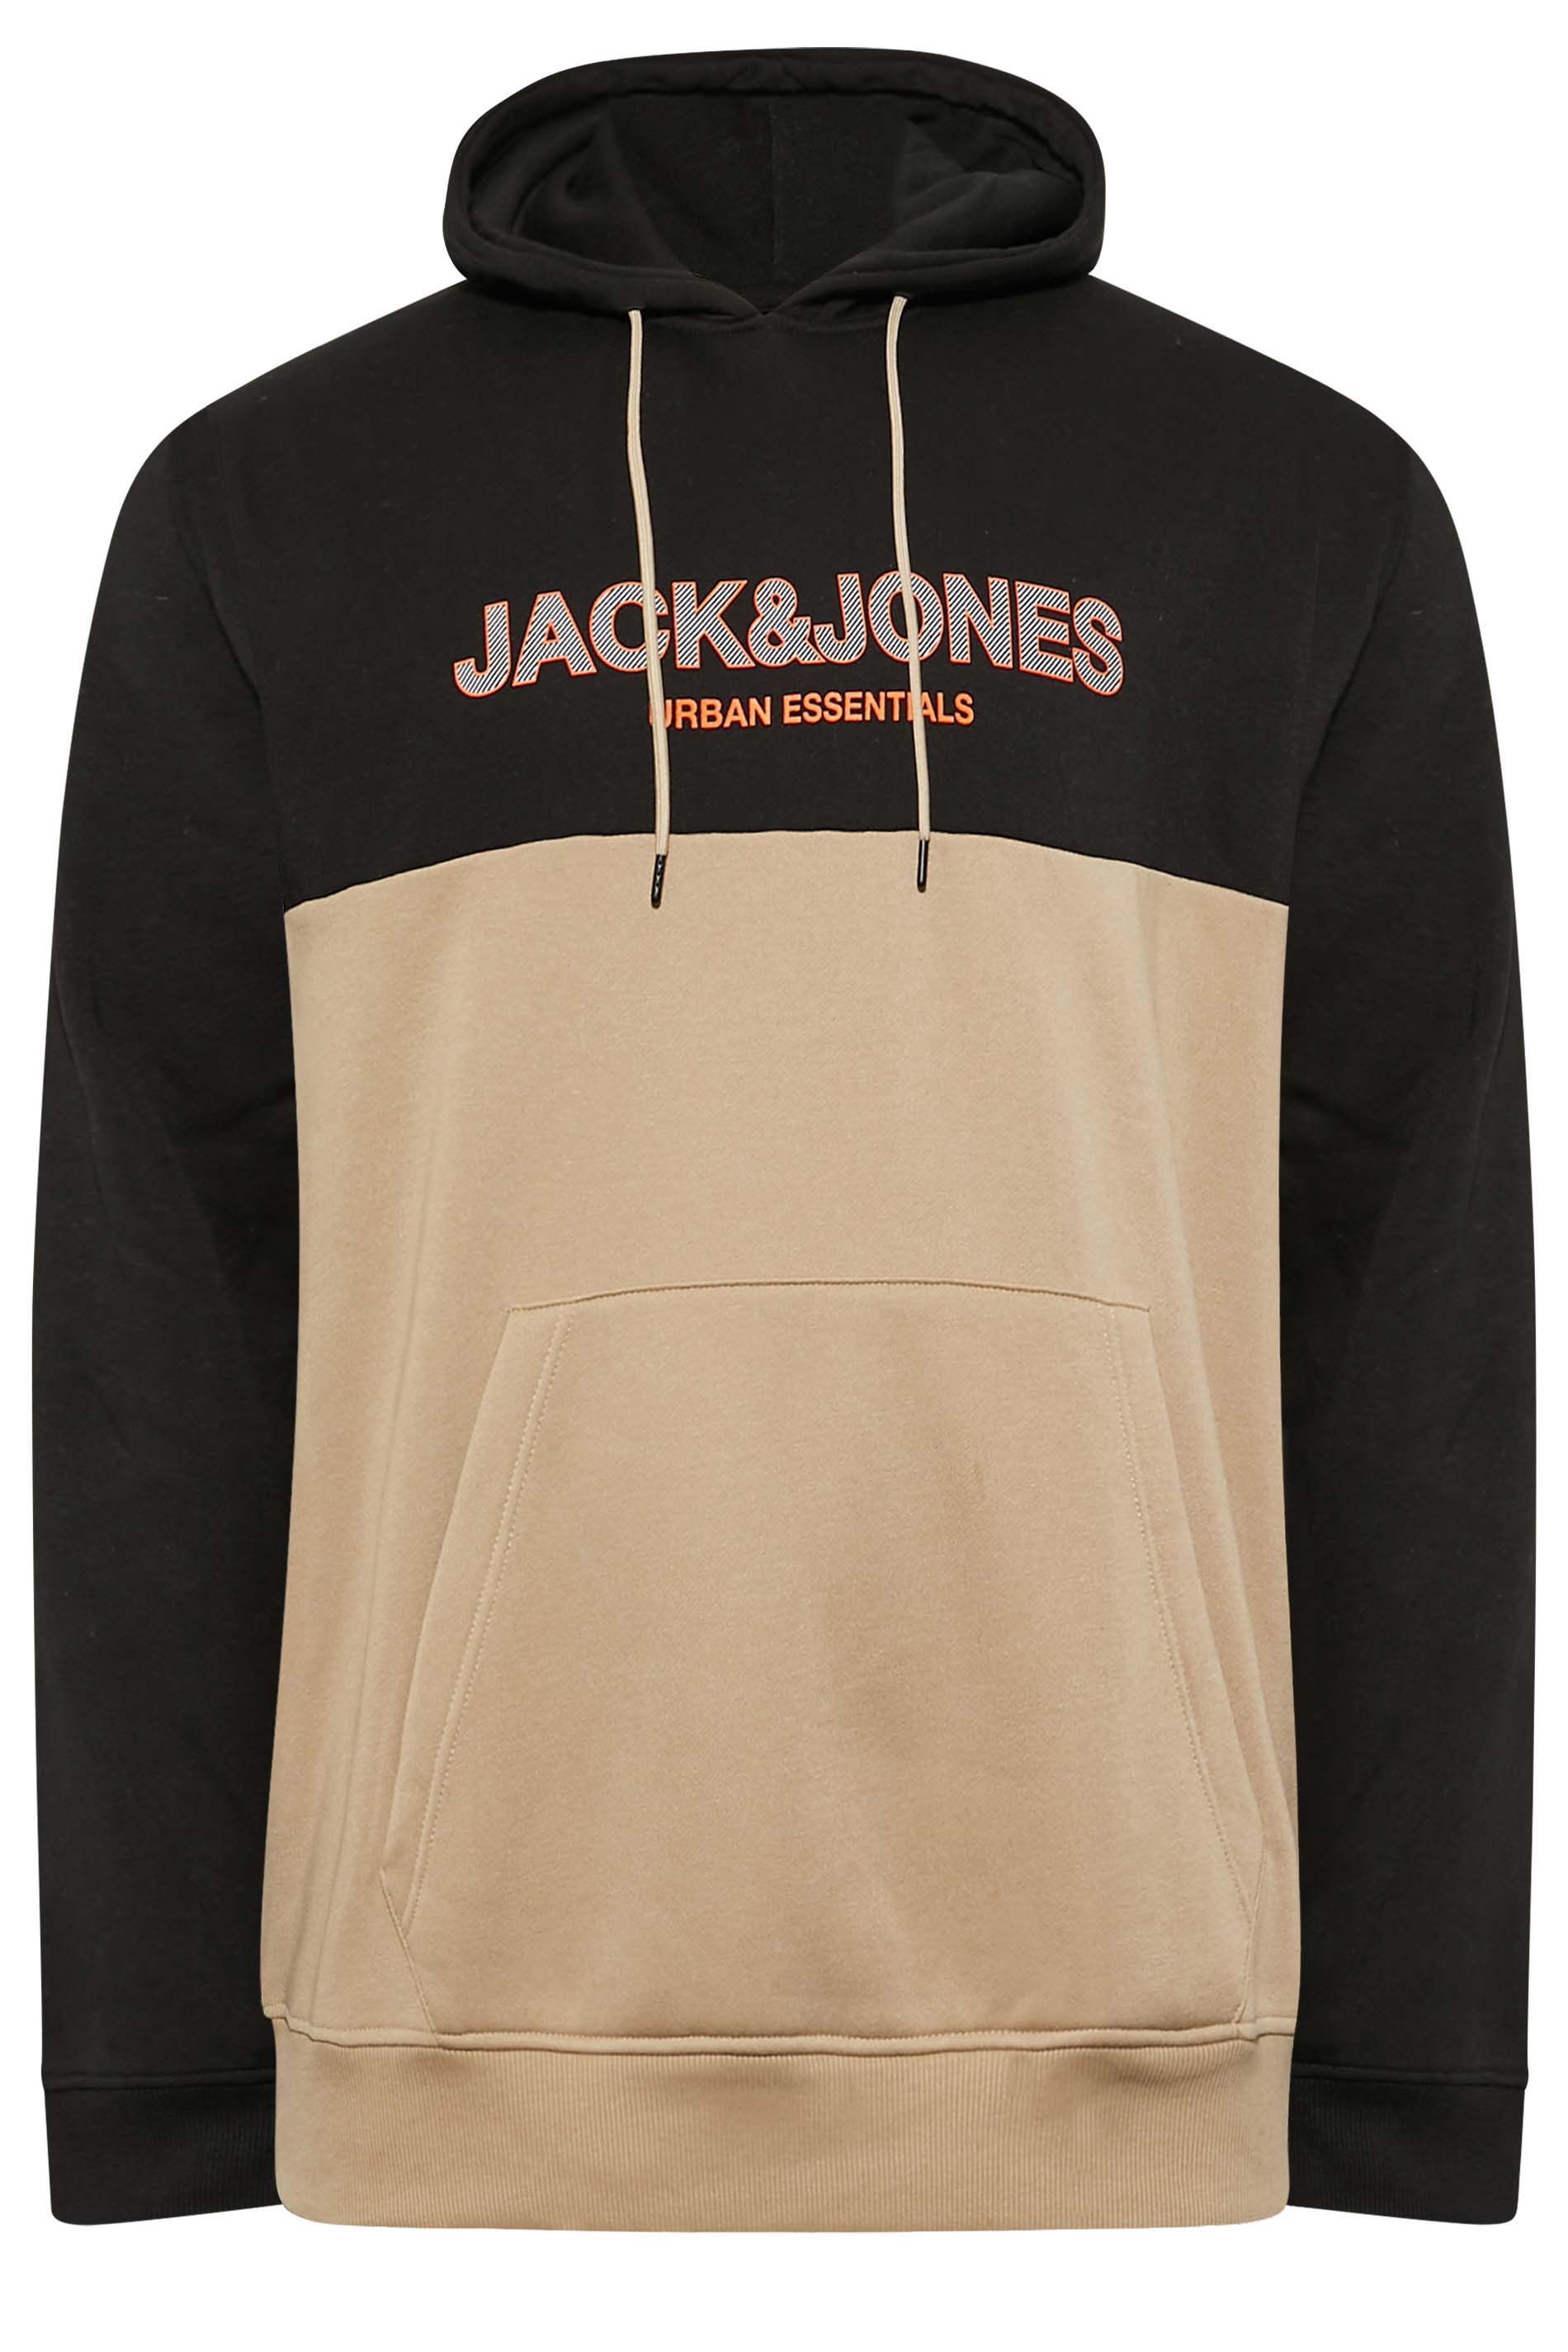 JACK & JONES Big & Tall Black & Beige Brown Colour Block Hoodie | BadRhino 3